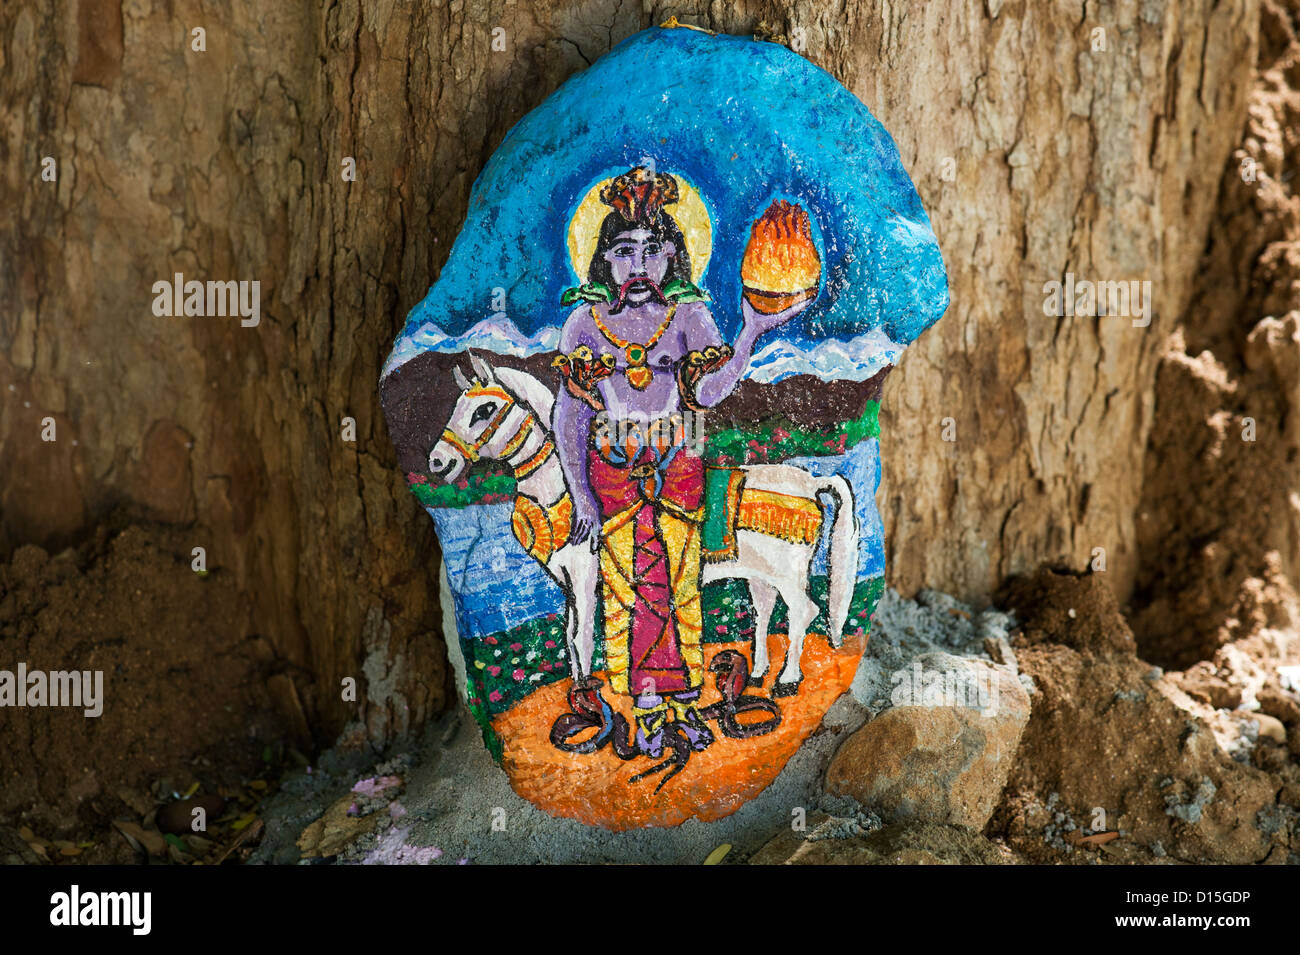 Dieu hindou indiens colorés peints sur une pierre dans la campagne indienne. L'Andhra Pradesh, Inde Banque D'Images